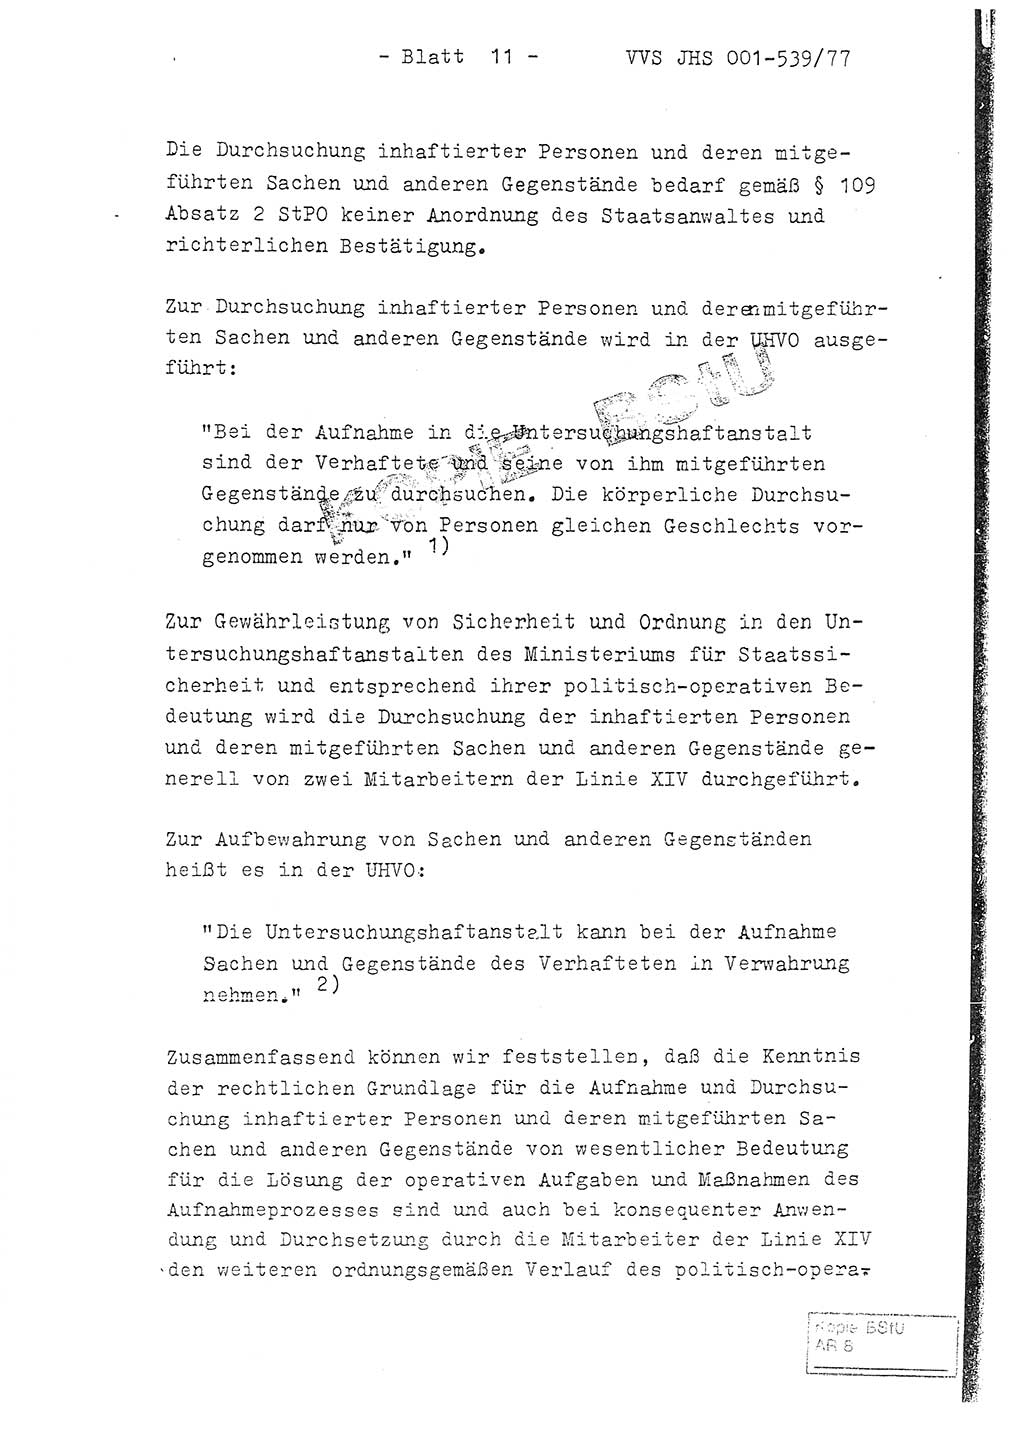 Fachschulabschlußarbeit Hauptmann Dietrich Jung (Abt. ⅩⅣ), Leutnant Klaus Klötzner (Abt. ⅩⅣ), Ministerium für Staatssicherheit (MfS) [Deutsche Demokratische Republik (DDR)], Juristische Hochschule (JHS), Vertrauliche Verschlußsache (VVS) 001-539/77, Potsdam 1978, Seite 11 (FS-Abschl.-Arb. MfS DDR JHS VVS 001-539/77 1978, S. 11)